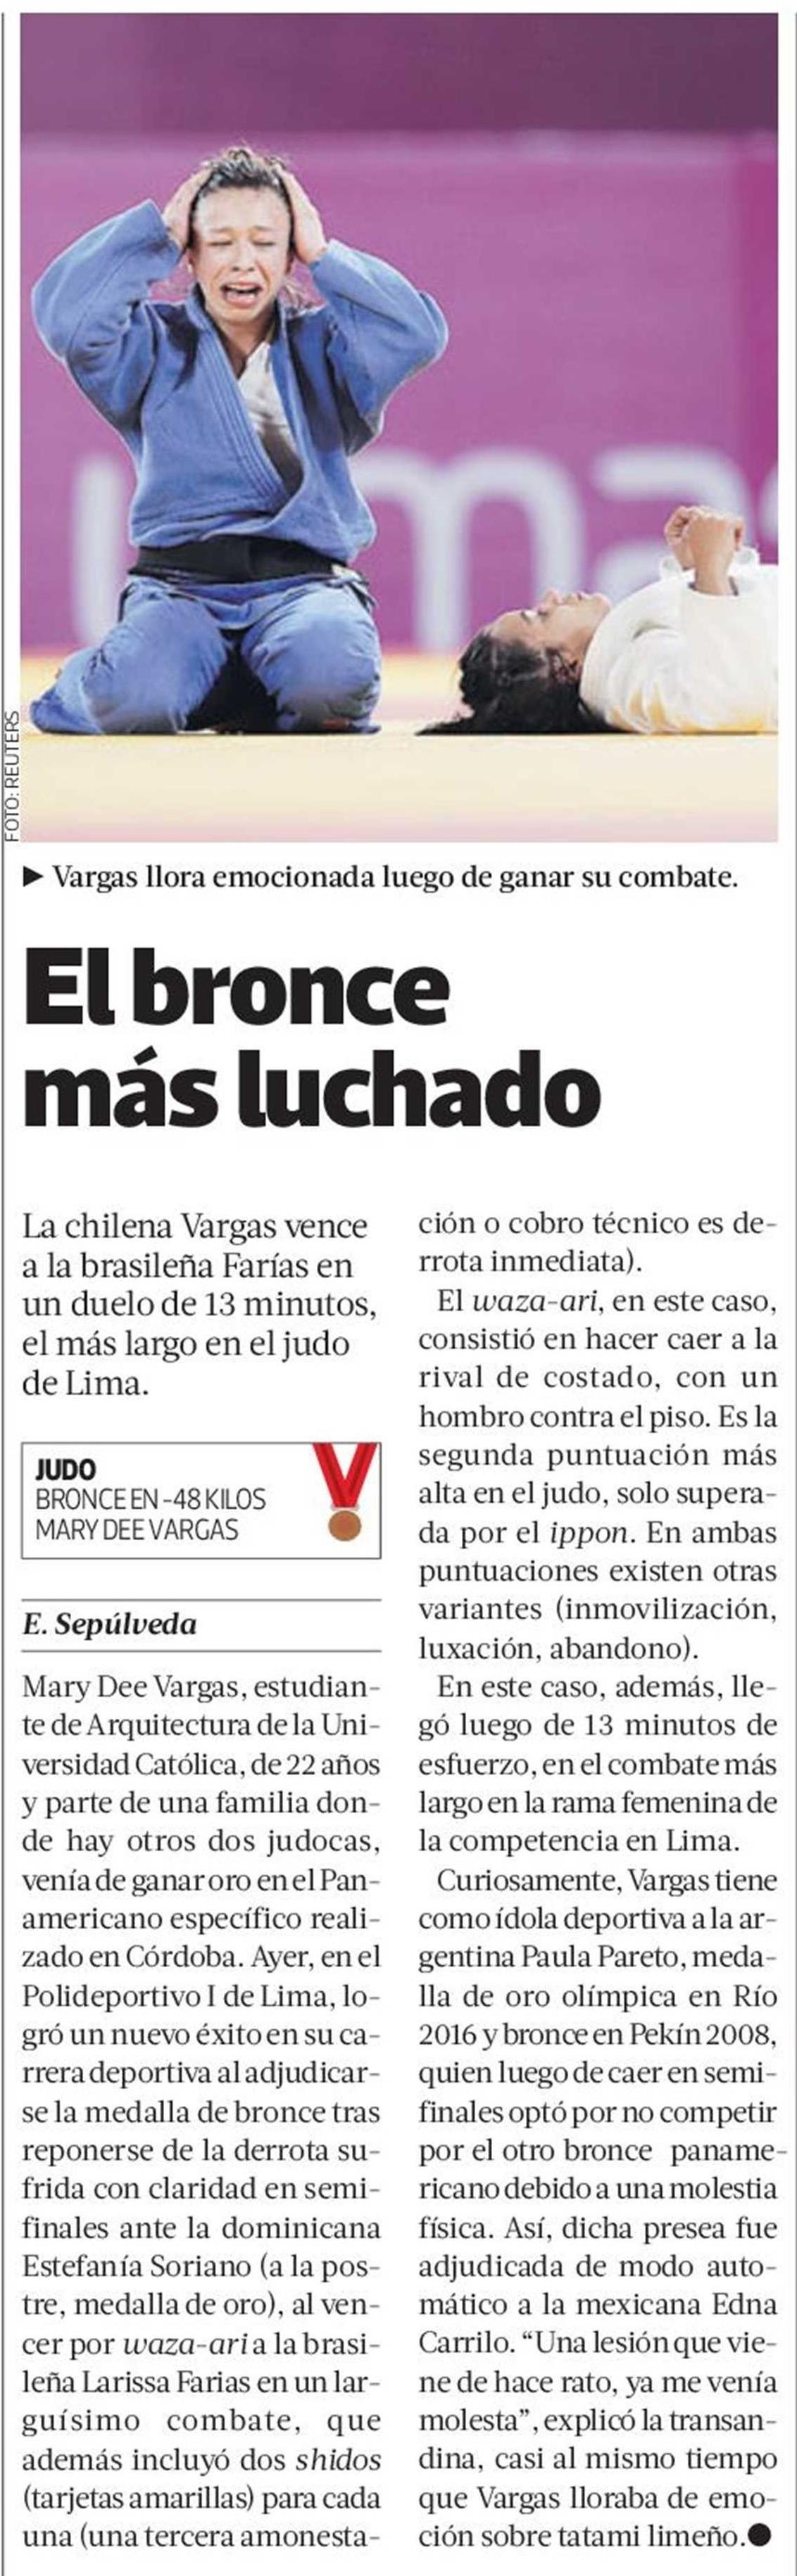 19-08-12_Estudiante_ARQ_UC_obtuvo_bronce_en_Juegos_Panamericanos_Lima_2019.jpeg